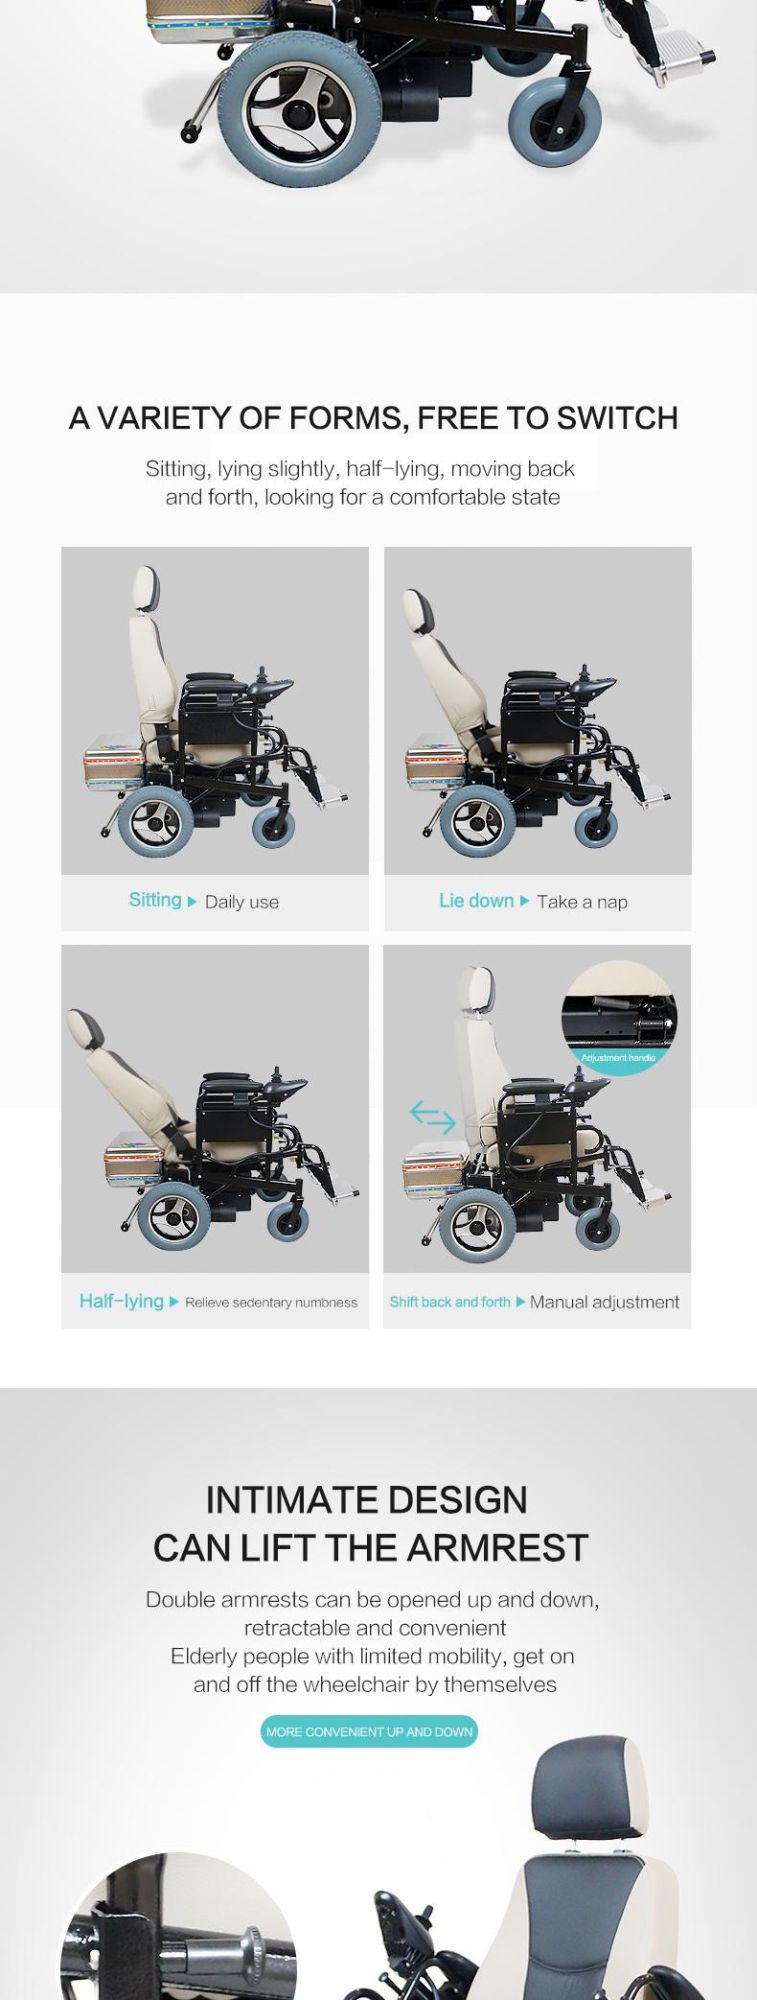 Heavy Wheel Chair Electric Power Wheelchair